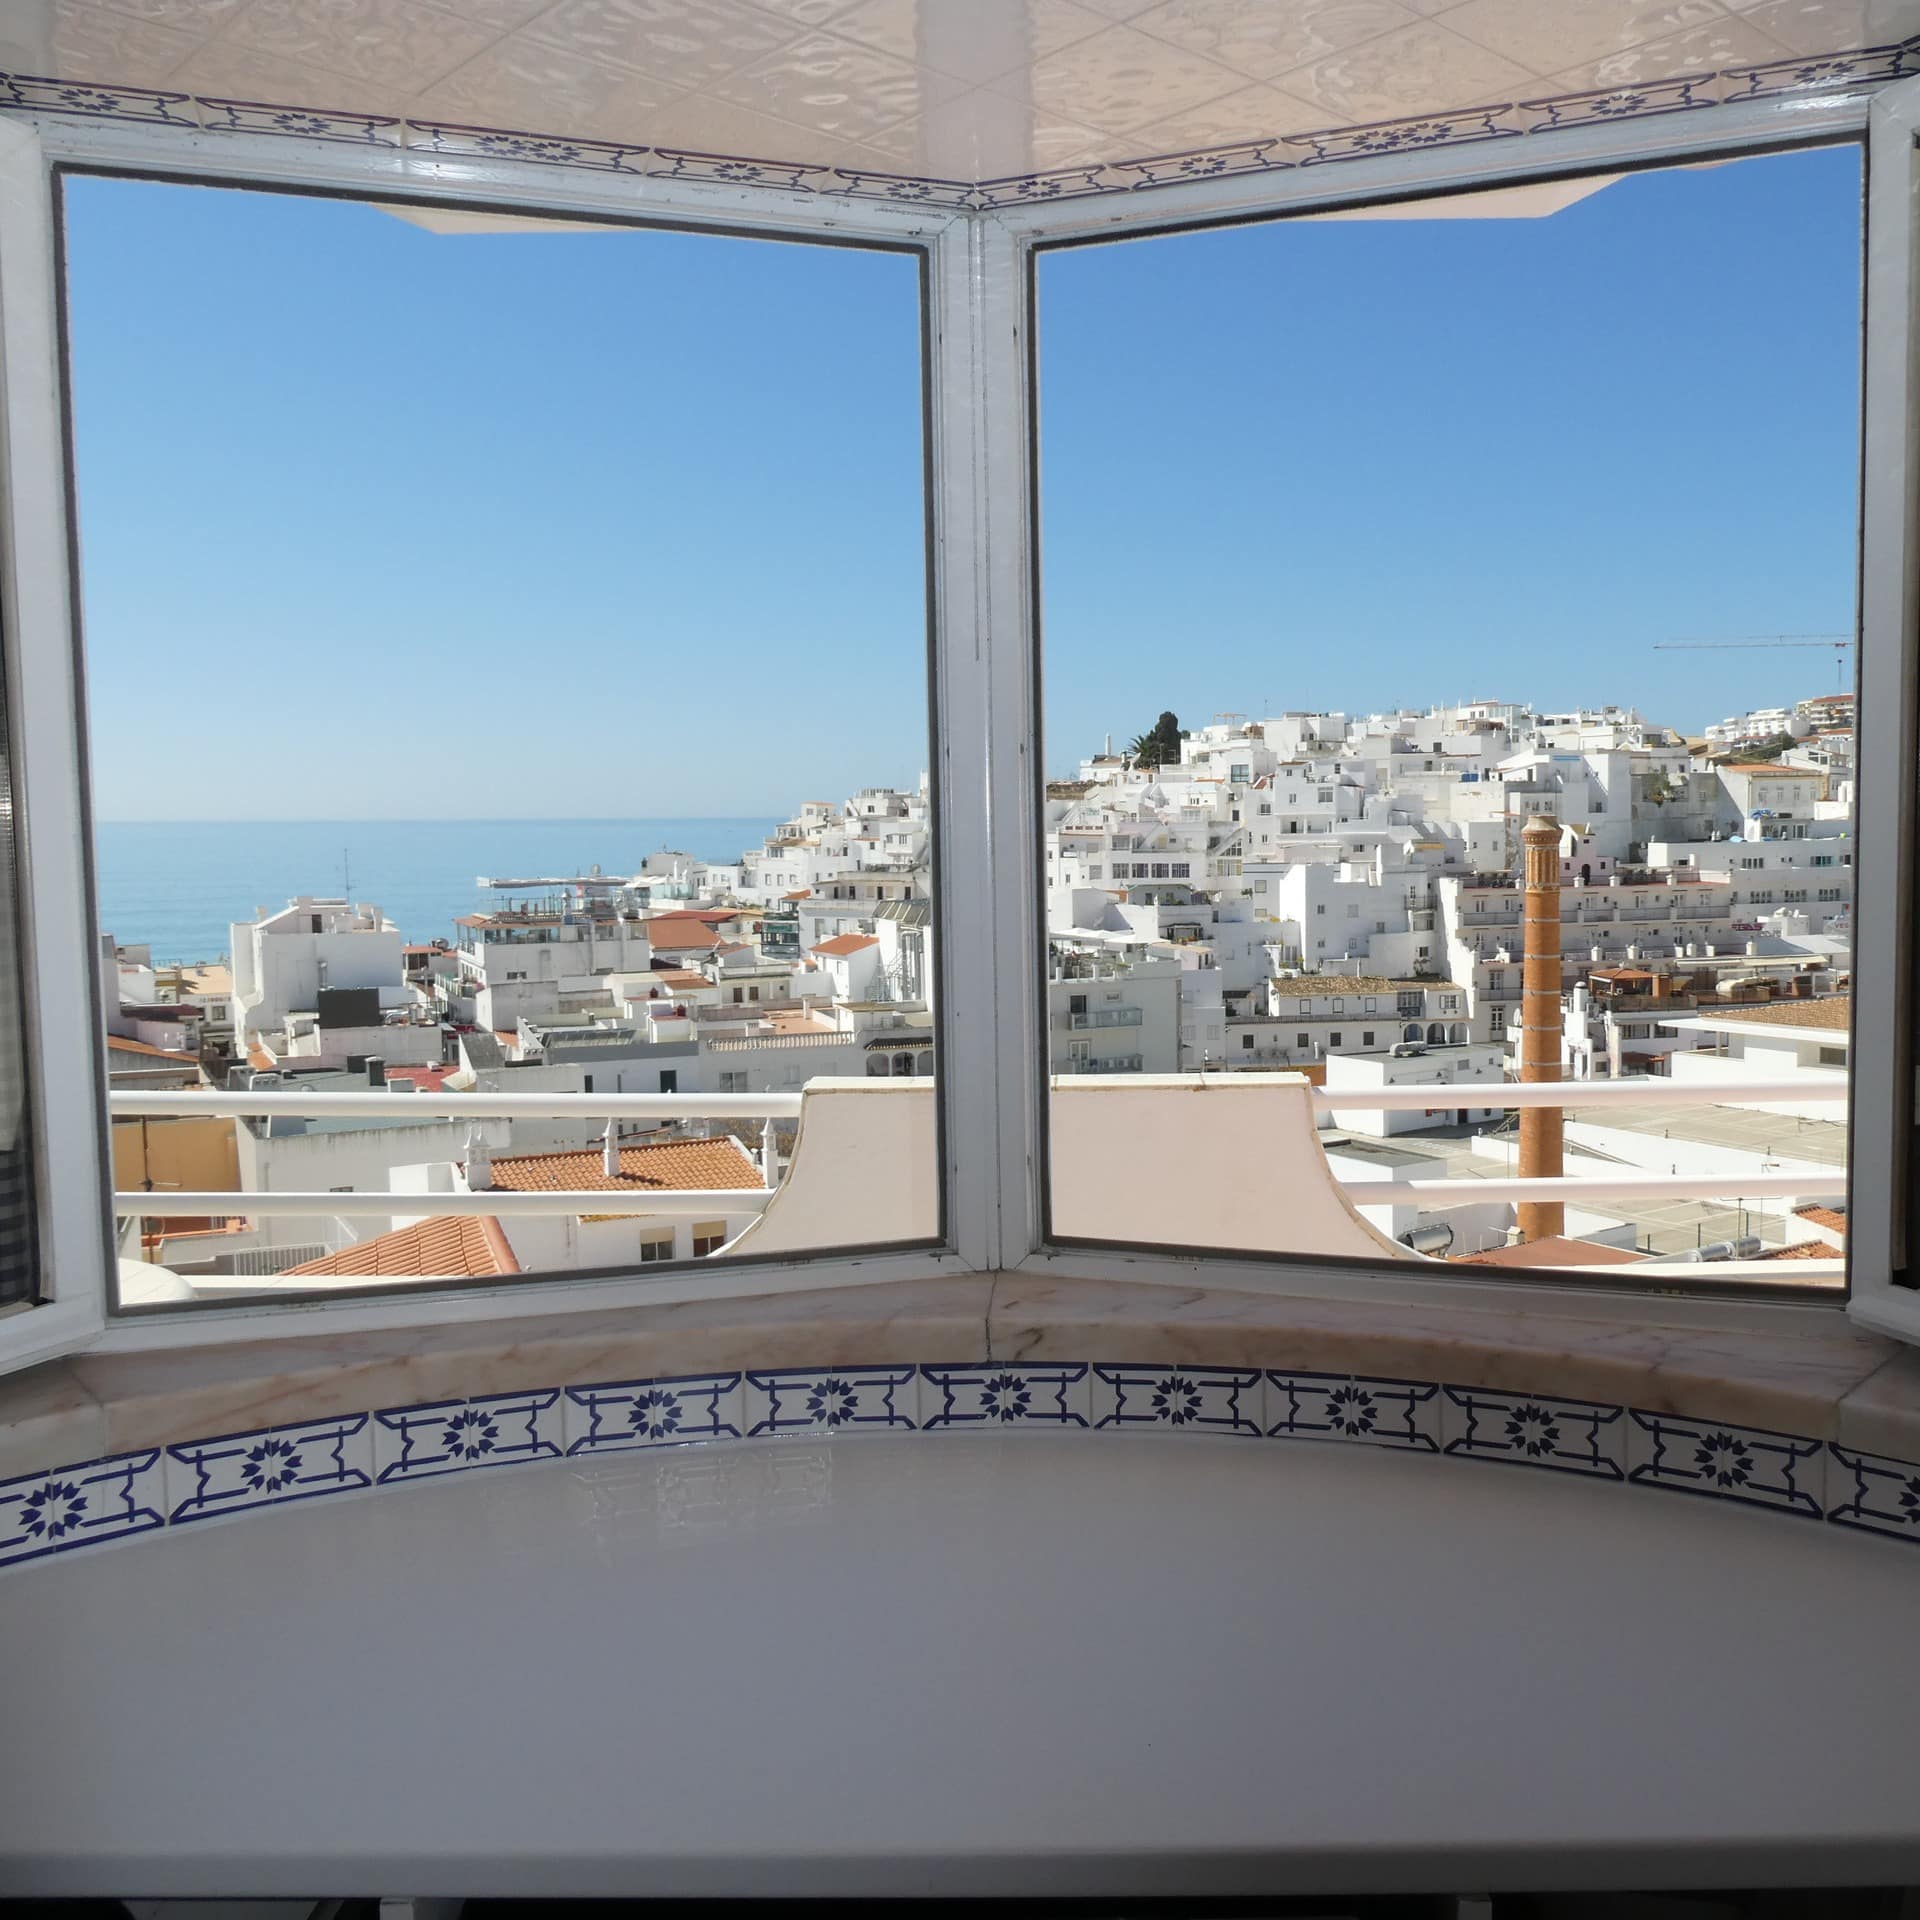 Blick aus dem Küchenfenster einer Ferienwohnung in Albufeira auf die weißen Häuser und das Meer